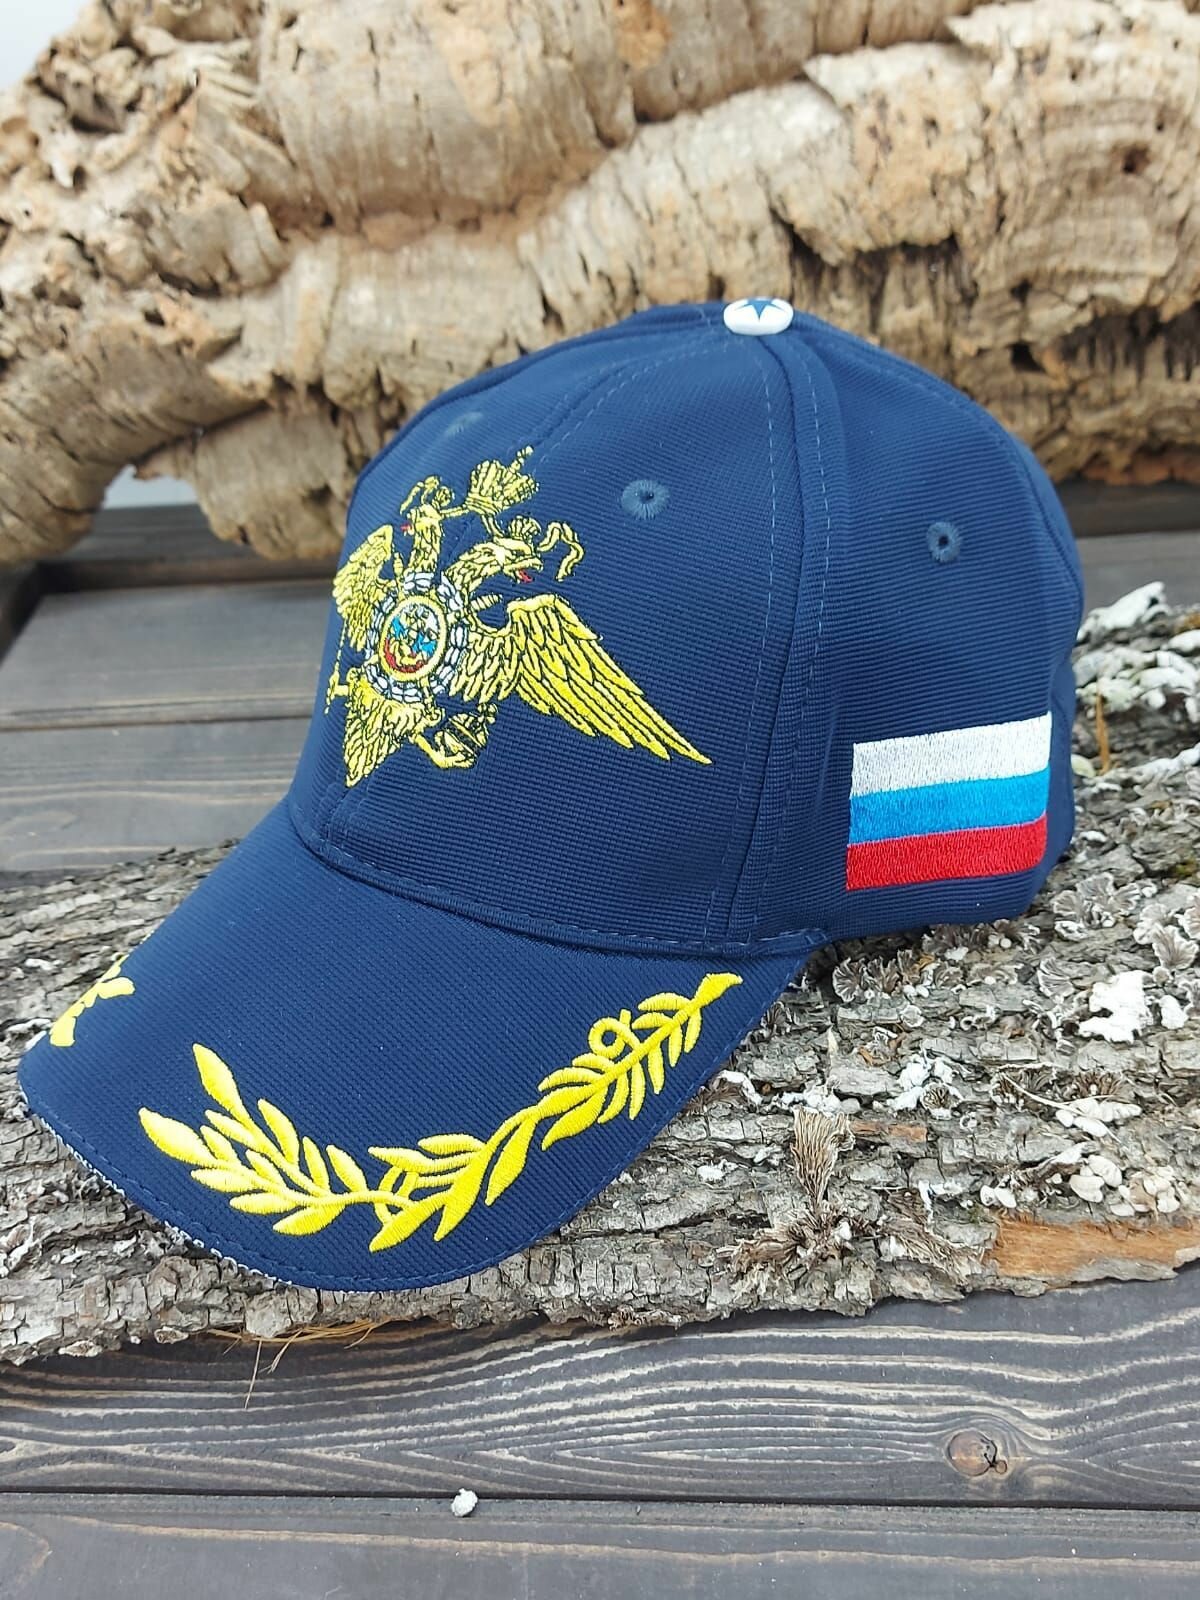 Бейсболка с символикой МВД ( Министерство внутренних дел ) России вышитая темно-синяя